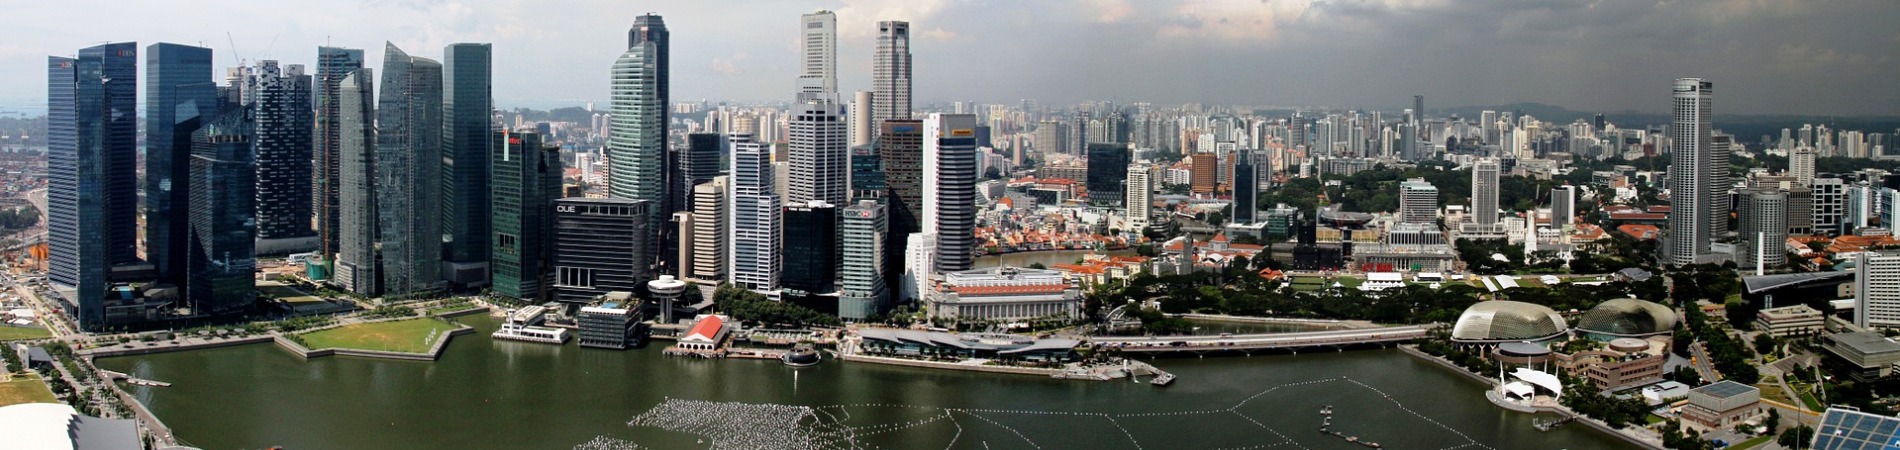 singapore-city.jpg